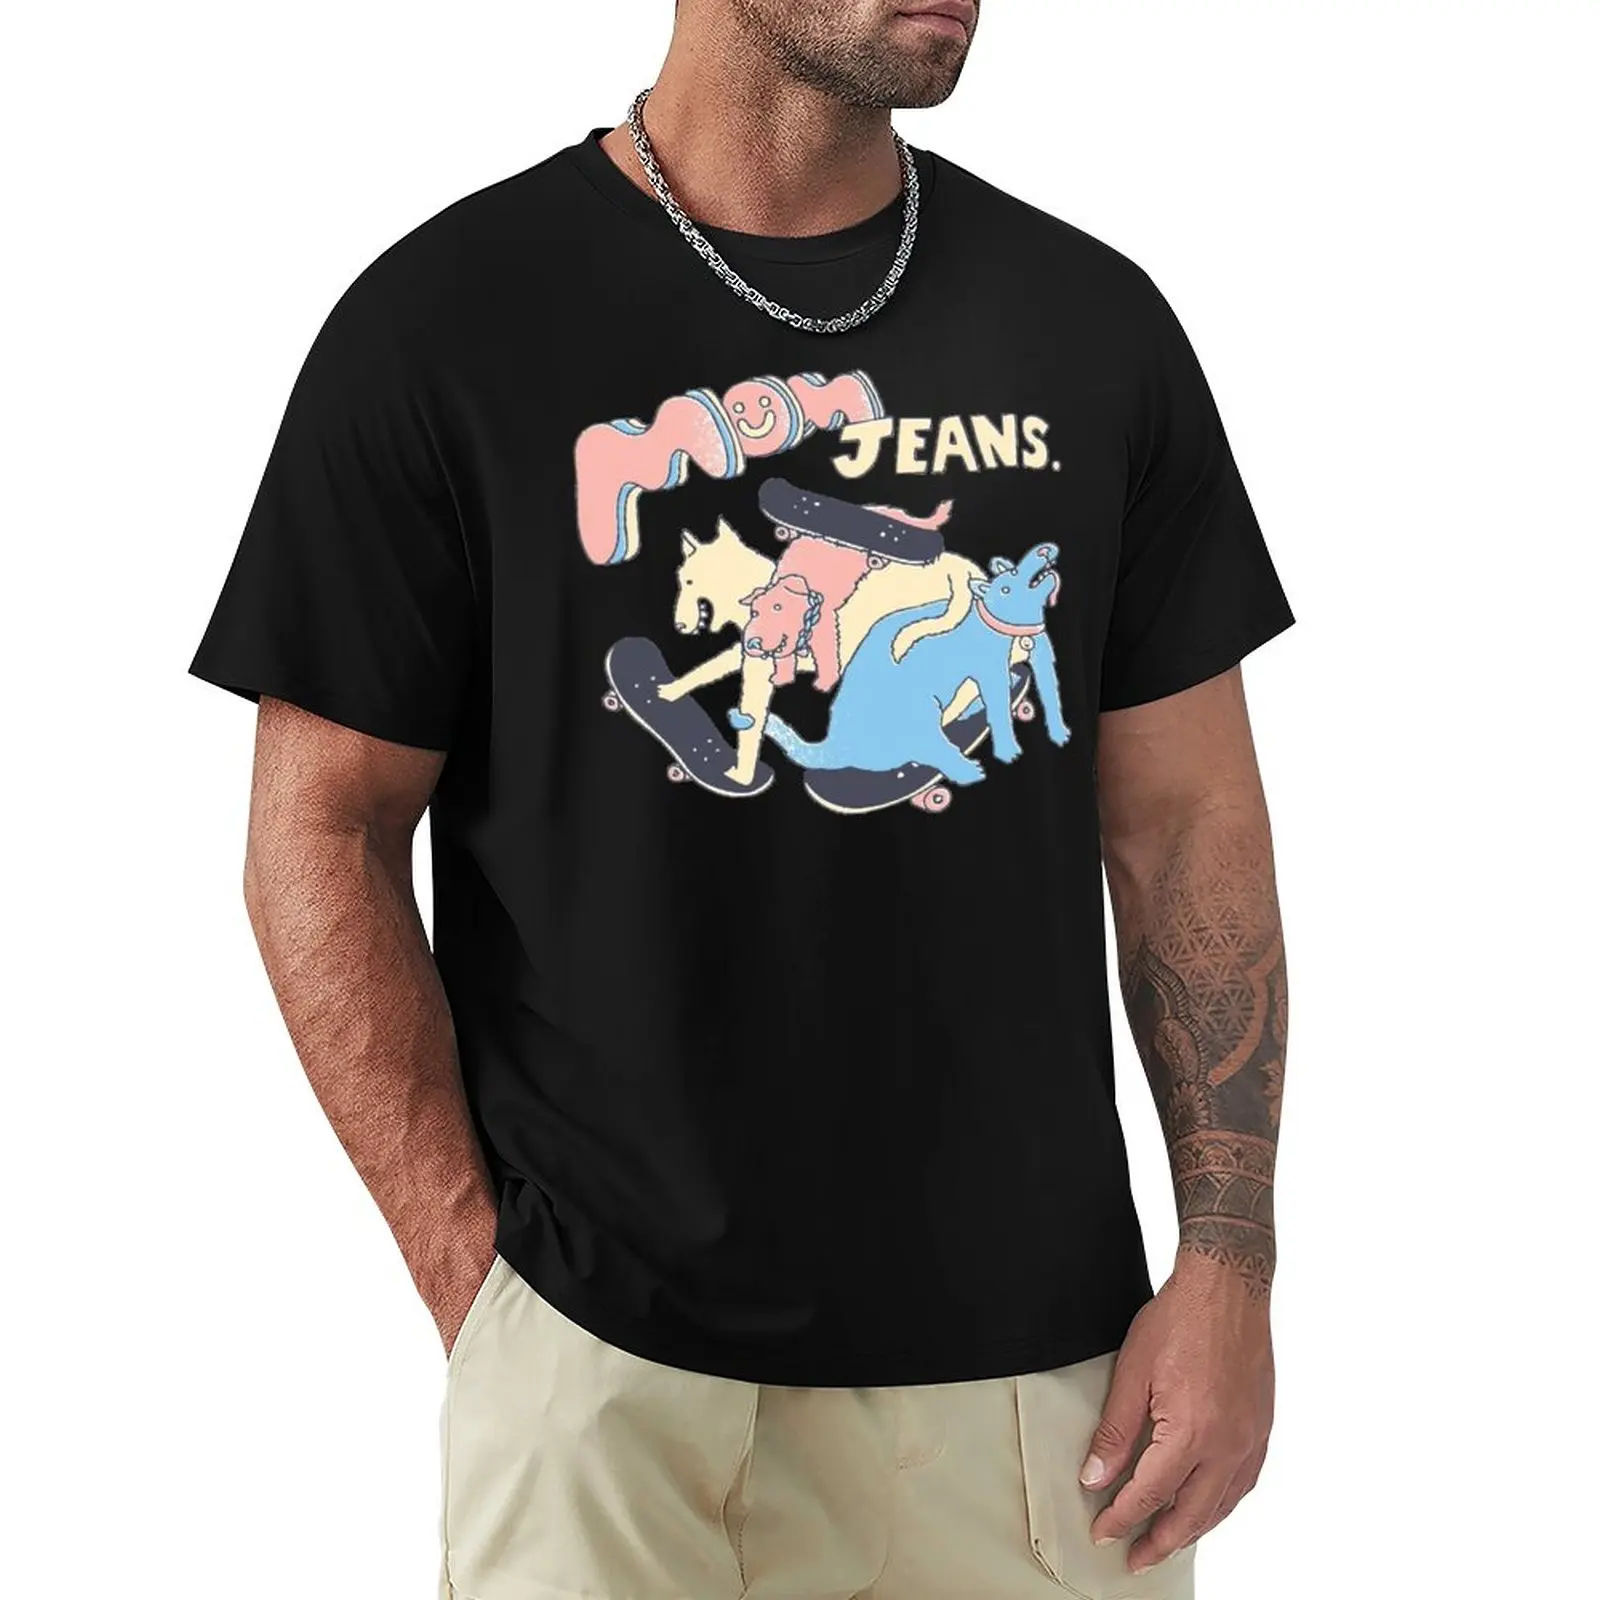 Mom Jeans band - Футболка с изображением щенка любви, графическая футболка, Блузка, спортивные рубашки, футболки с кошками, большие и высокие футболки для мужчин